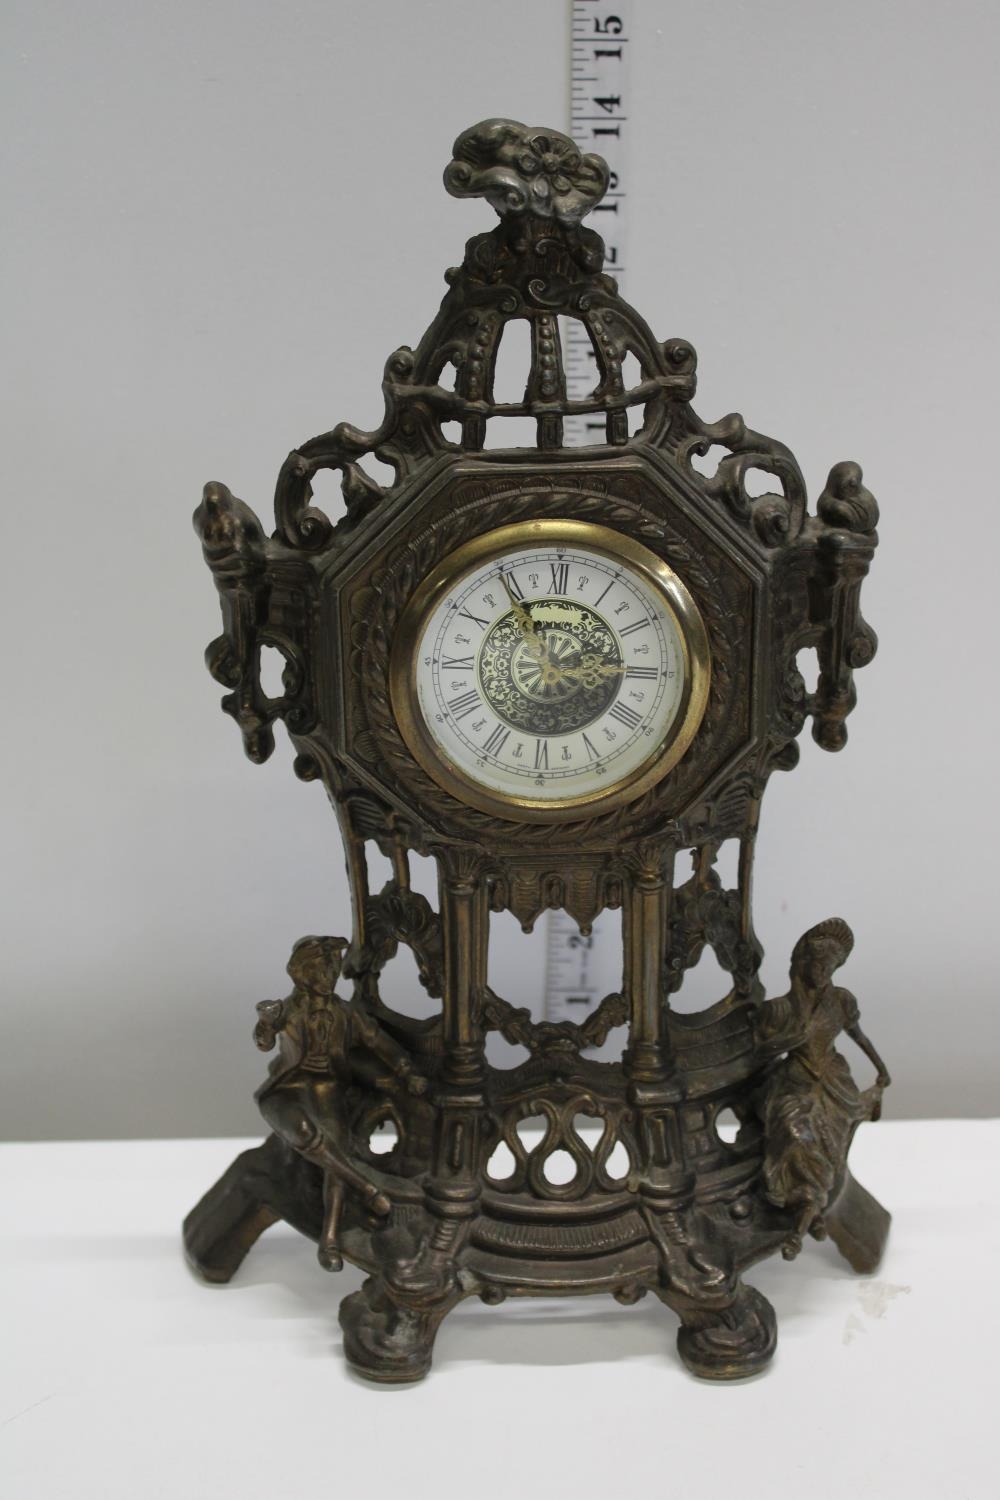 A cast metal mantel clock